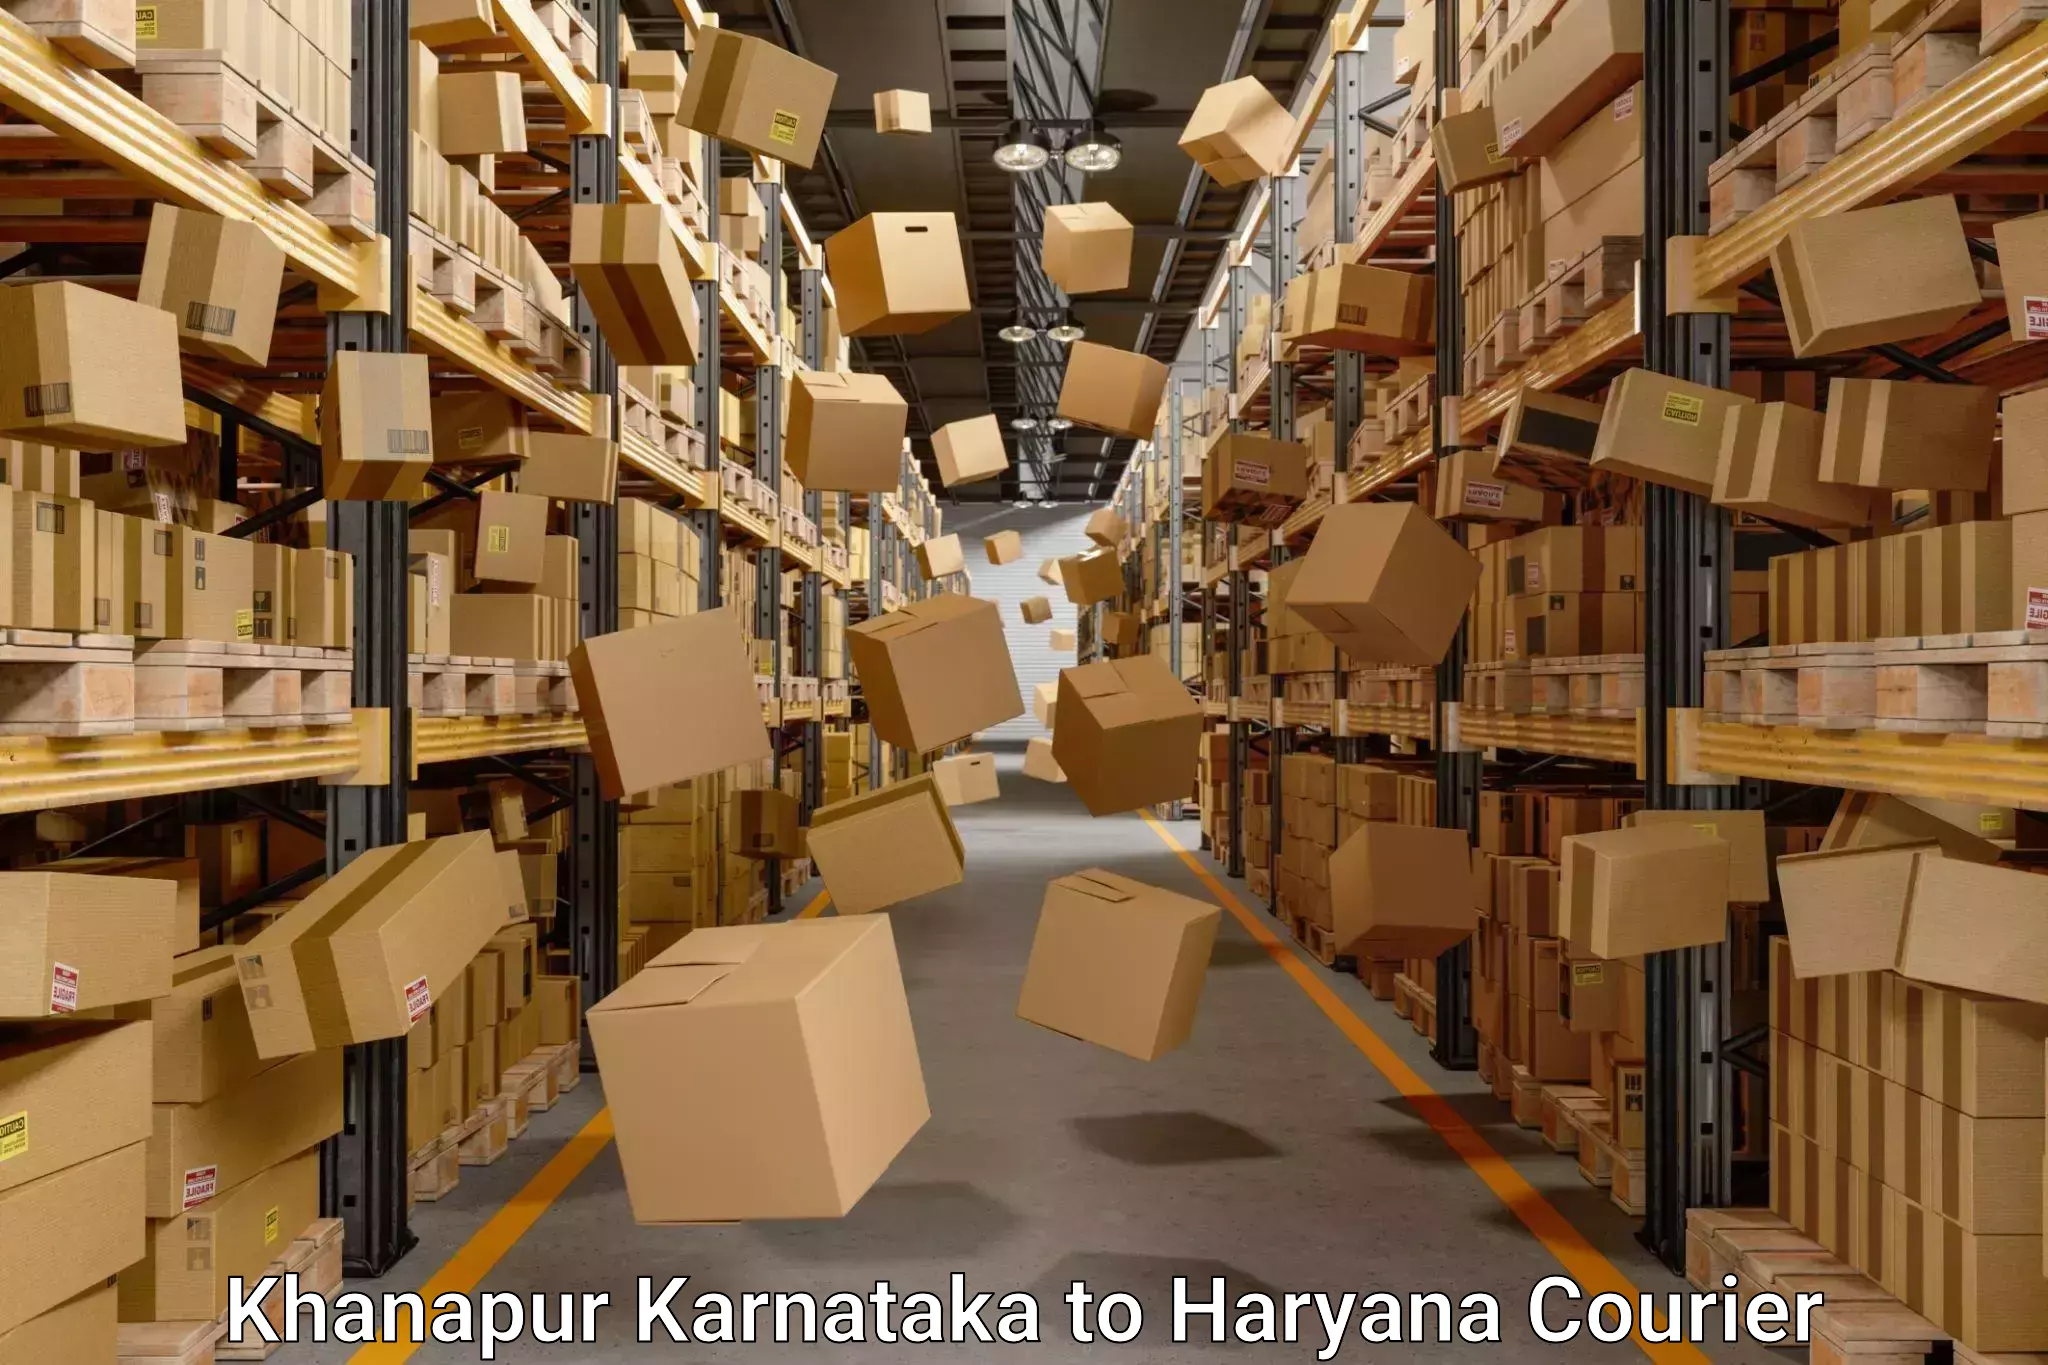 Furniture transport service Khanapur Karnataka to Mahendragarh